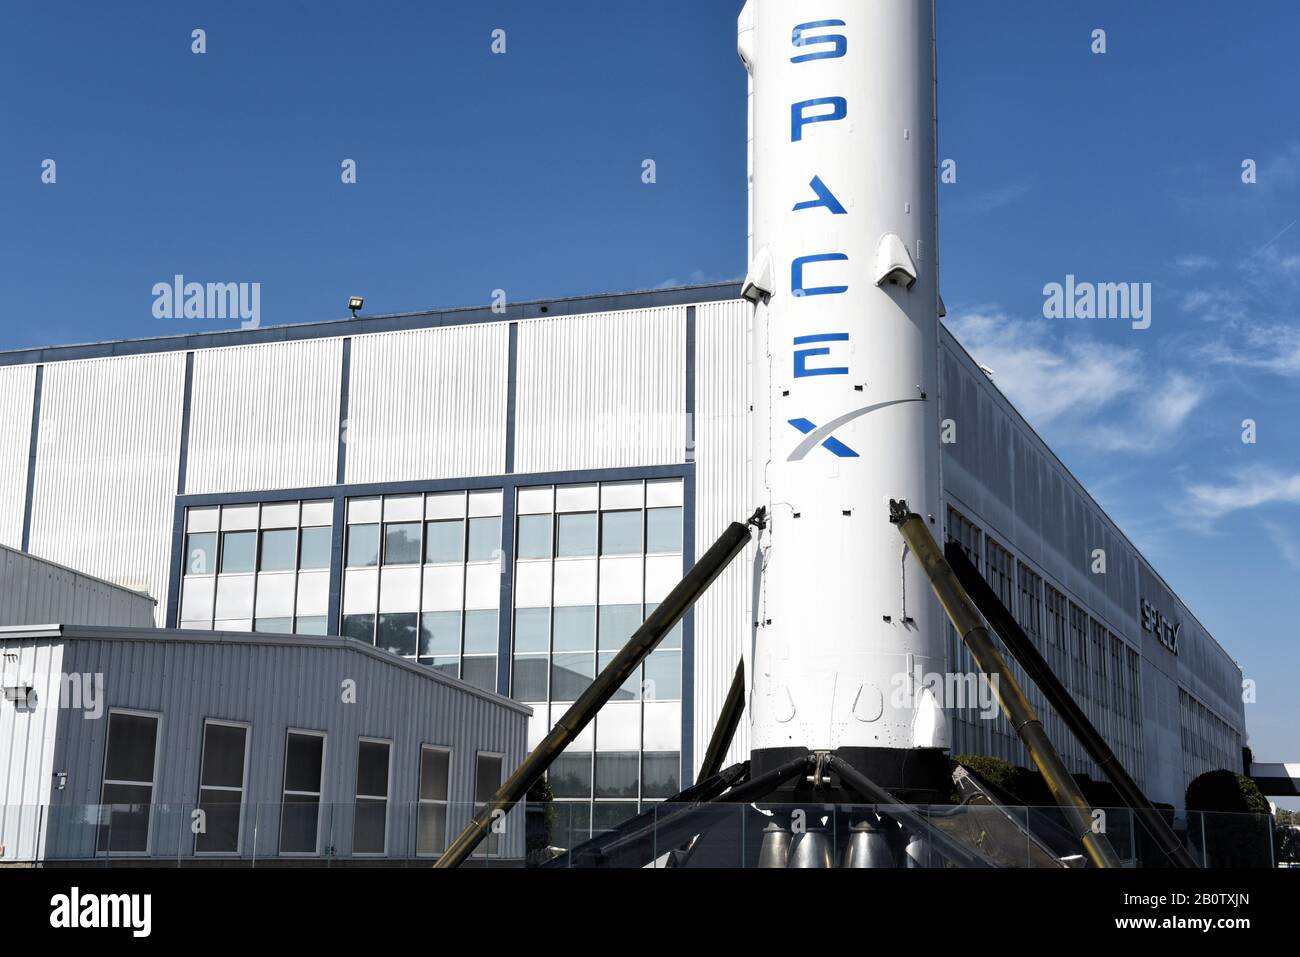 Hawthorne, KALIFORNIEN - 17. FEBRUAR 2020: Nahaufnahme einer Falcon 9 Booster-Rakete bei Space Exploration Technologies Corp, die als SpaceX, ein privates Amerika, gehandelt wird Stockfoto